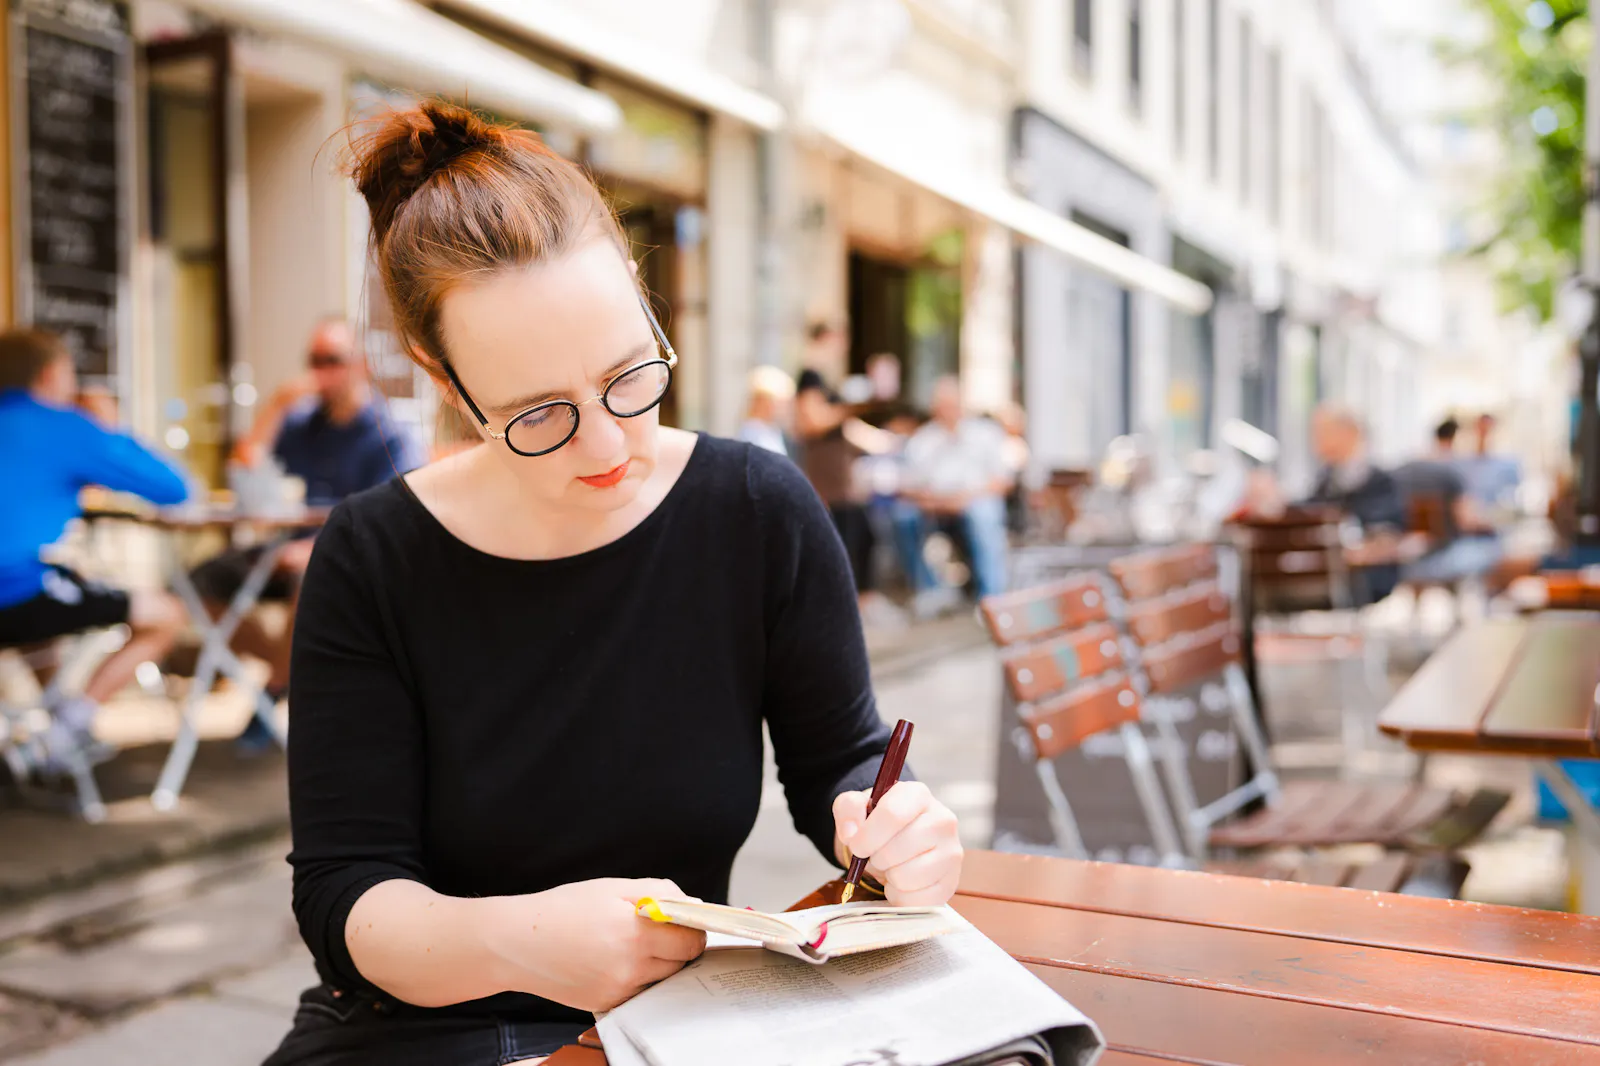 Insa van den Berg, Frau mit roten Haaren und Brille, sitzt an einem Tisch und macht sich mit einem Füller Notizen in einem Heft.